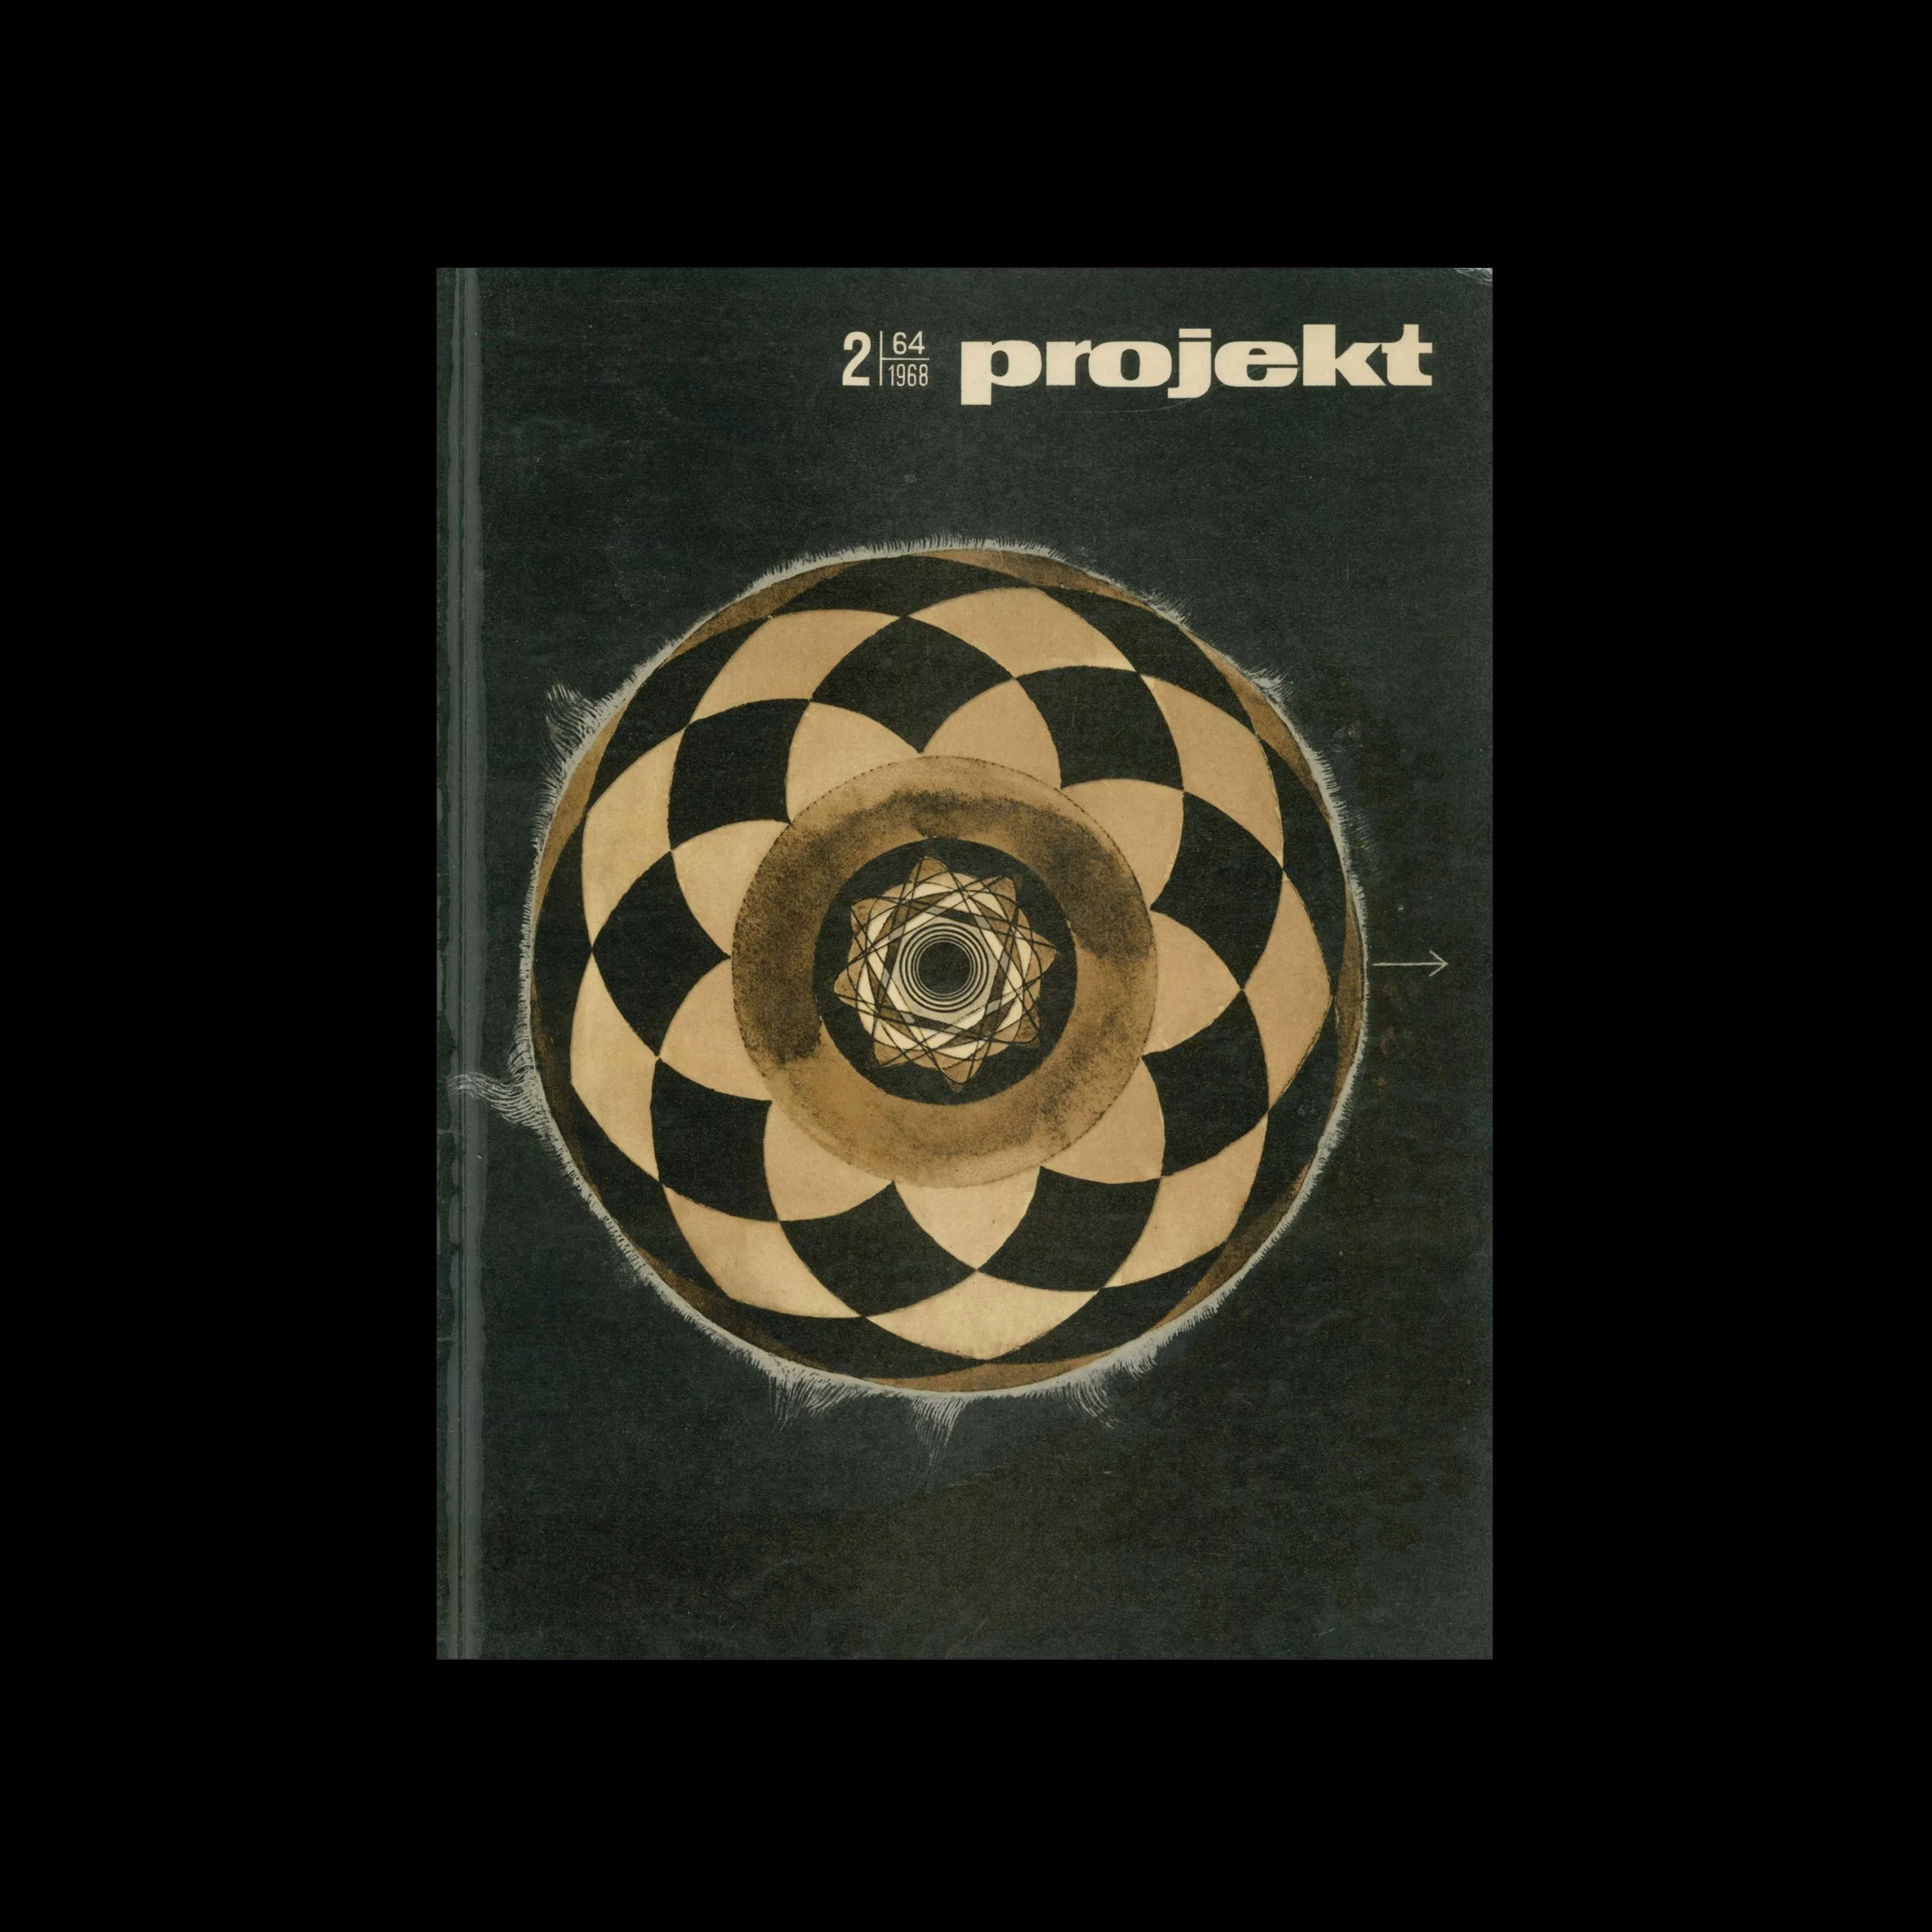 Projekt 64, 2, 1968. Cover design by Andrzej Strumiłło